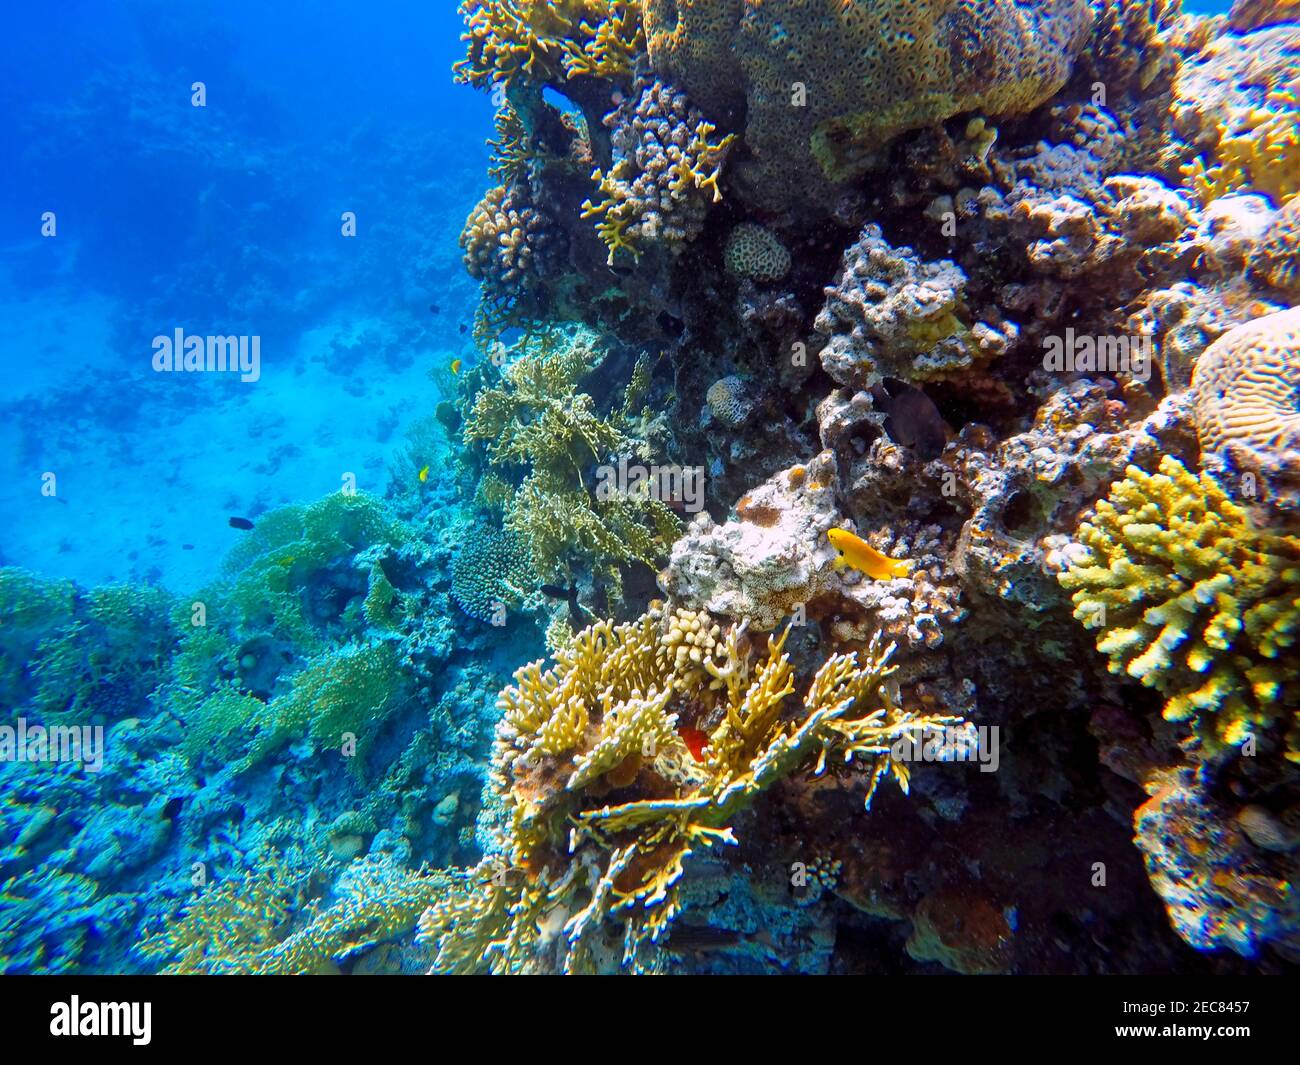 Corales vistos haciendo ronquidos en las aguas del Golfo de Aqaba en Jordania. Aqaba tiene un excelente buceo con coloridos arrecifes. Aqaba, Mar Rojo, Jordania. Foto de stock